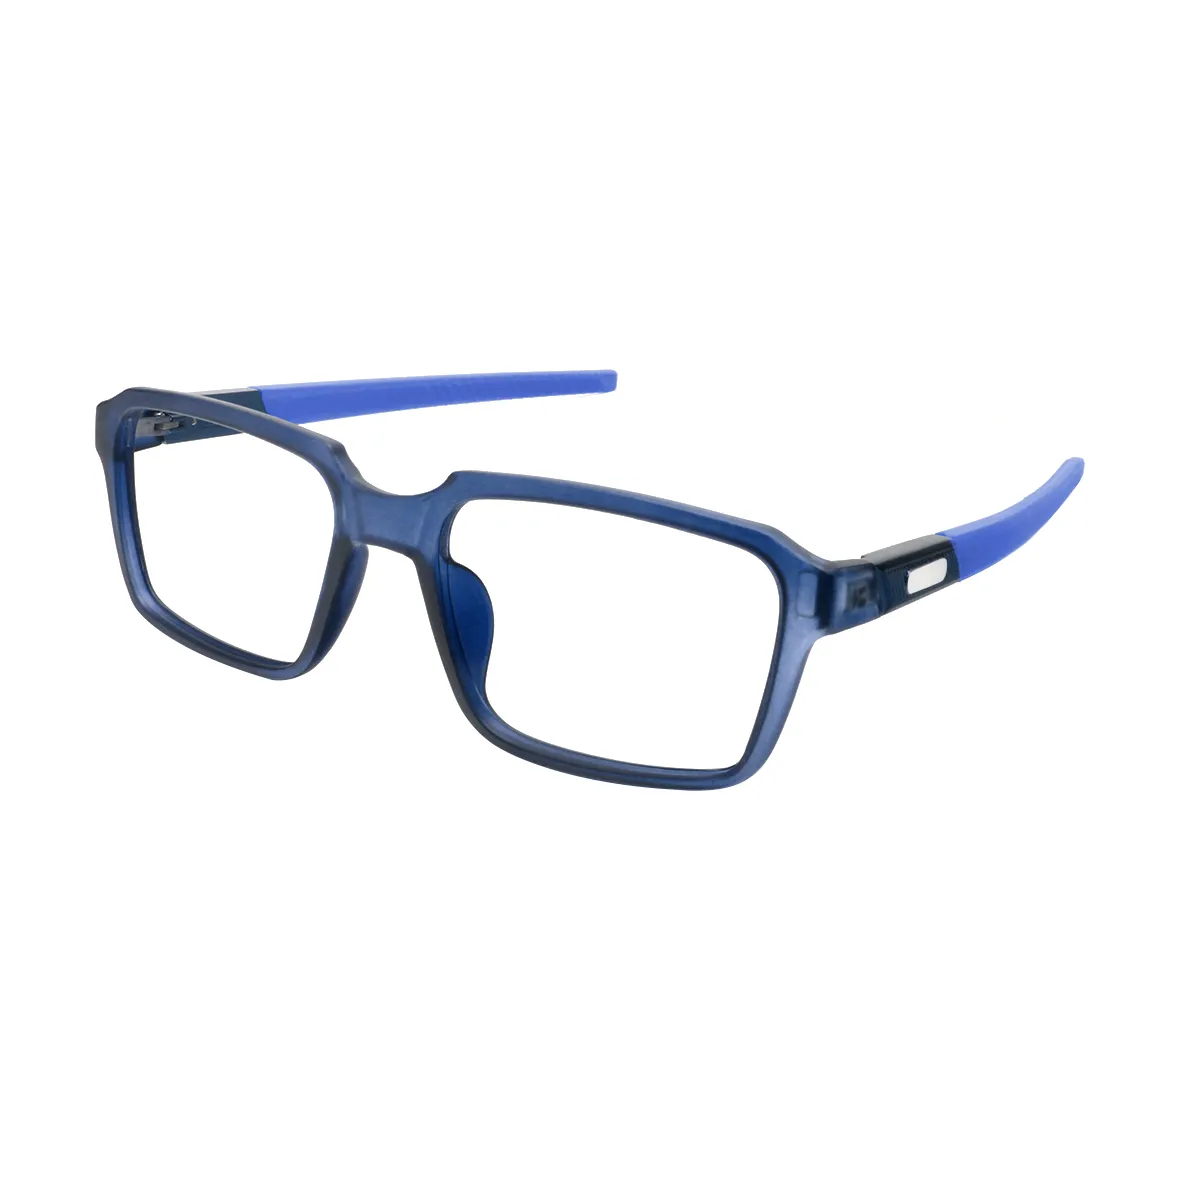 Elmo - Square Blue Glasses for Men & Women - EFE